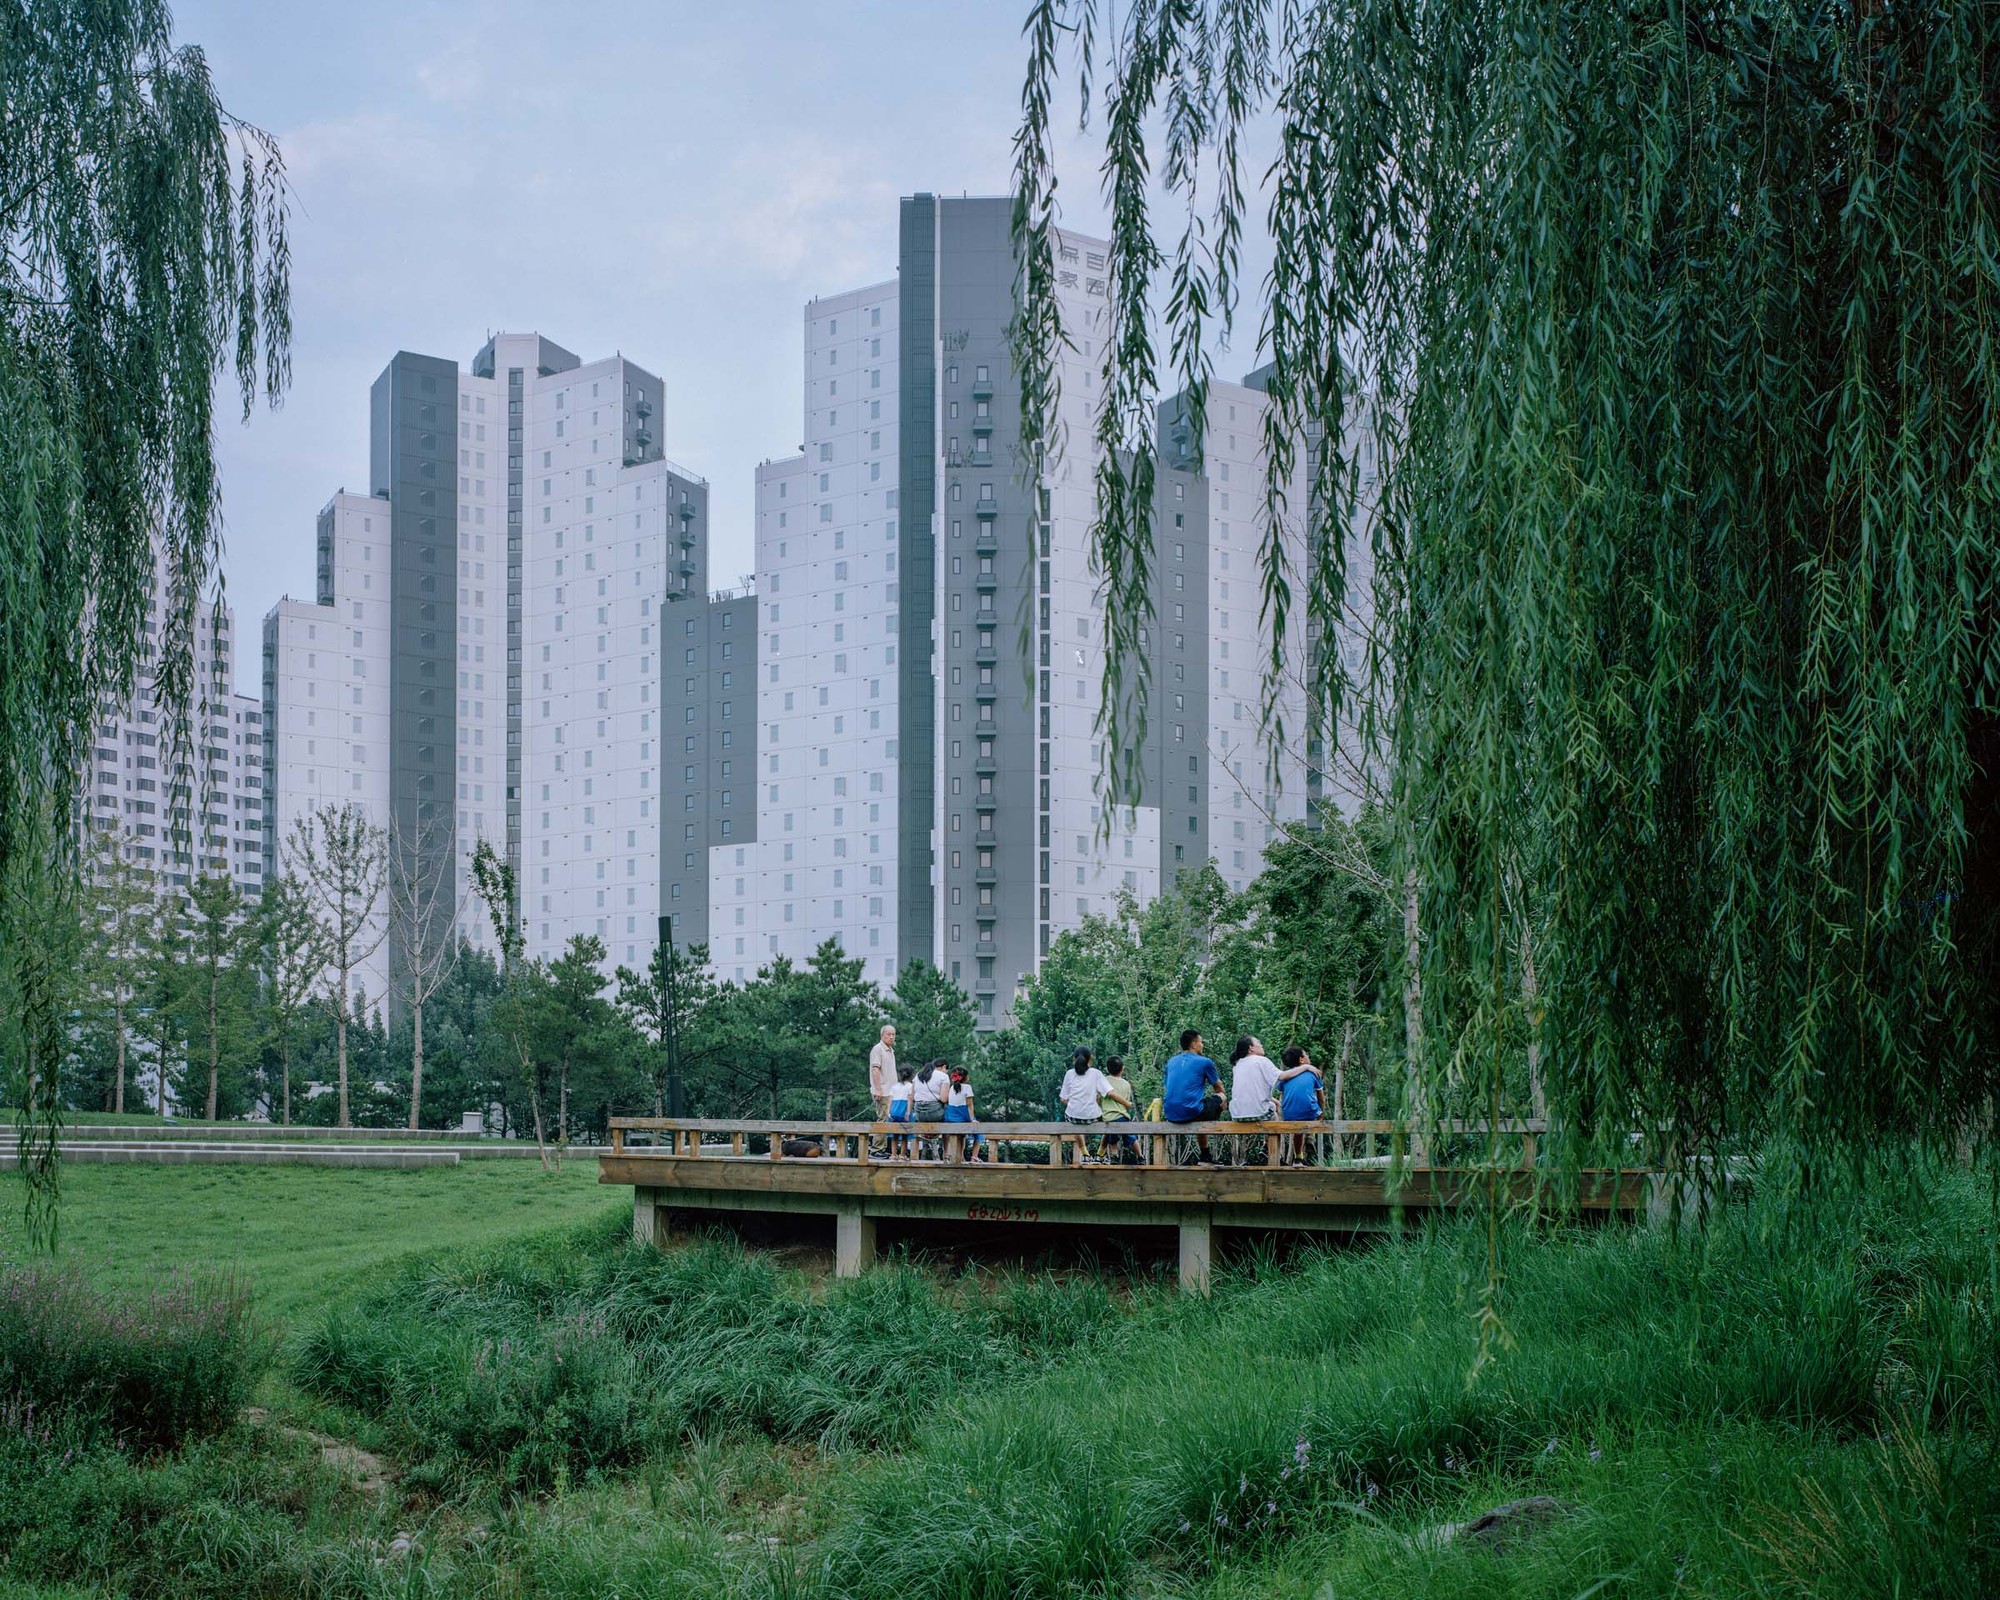 北京百子湾公租房 / MAD建筑事务所|ART-Arrakis | 建筑室内设计的创新与灵感